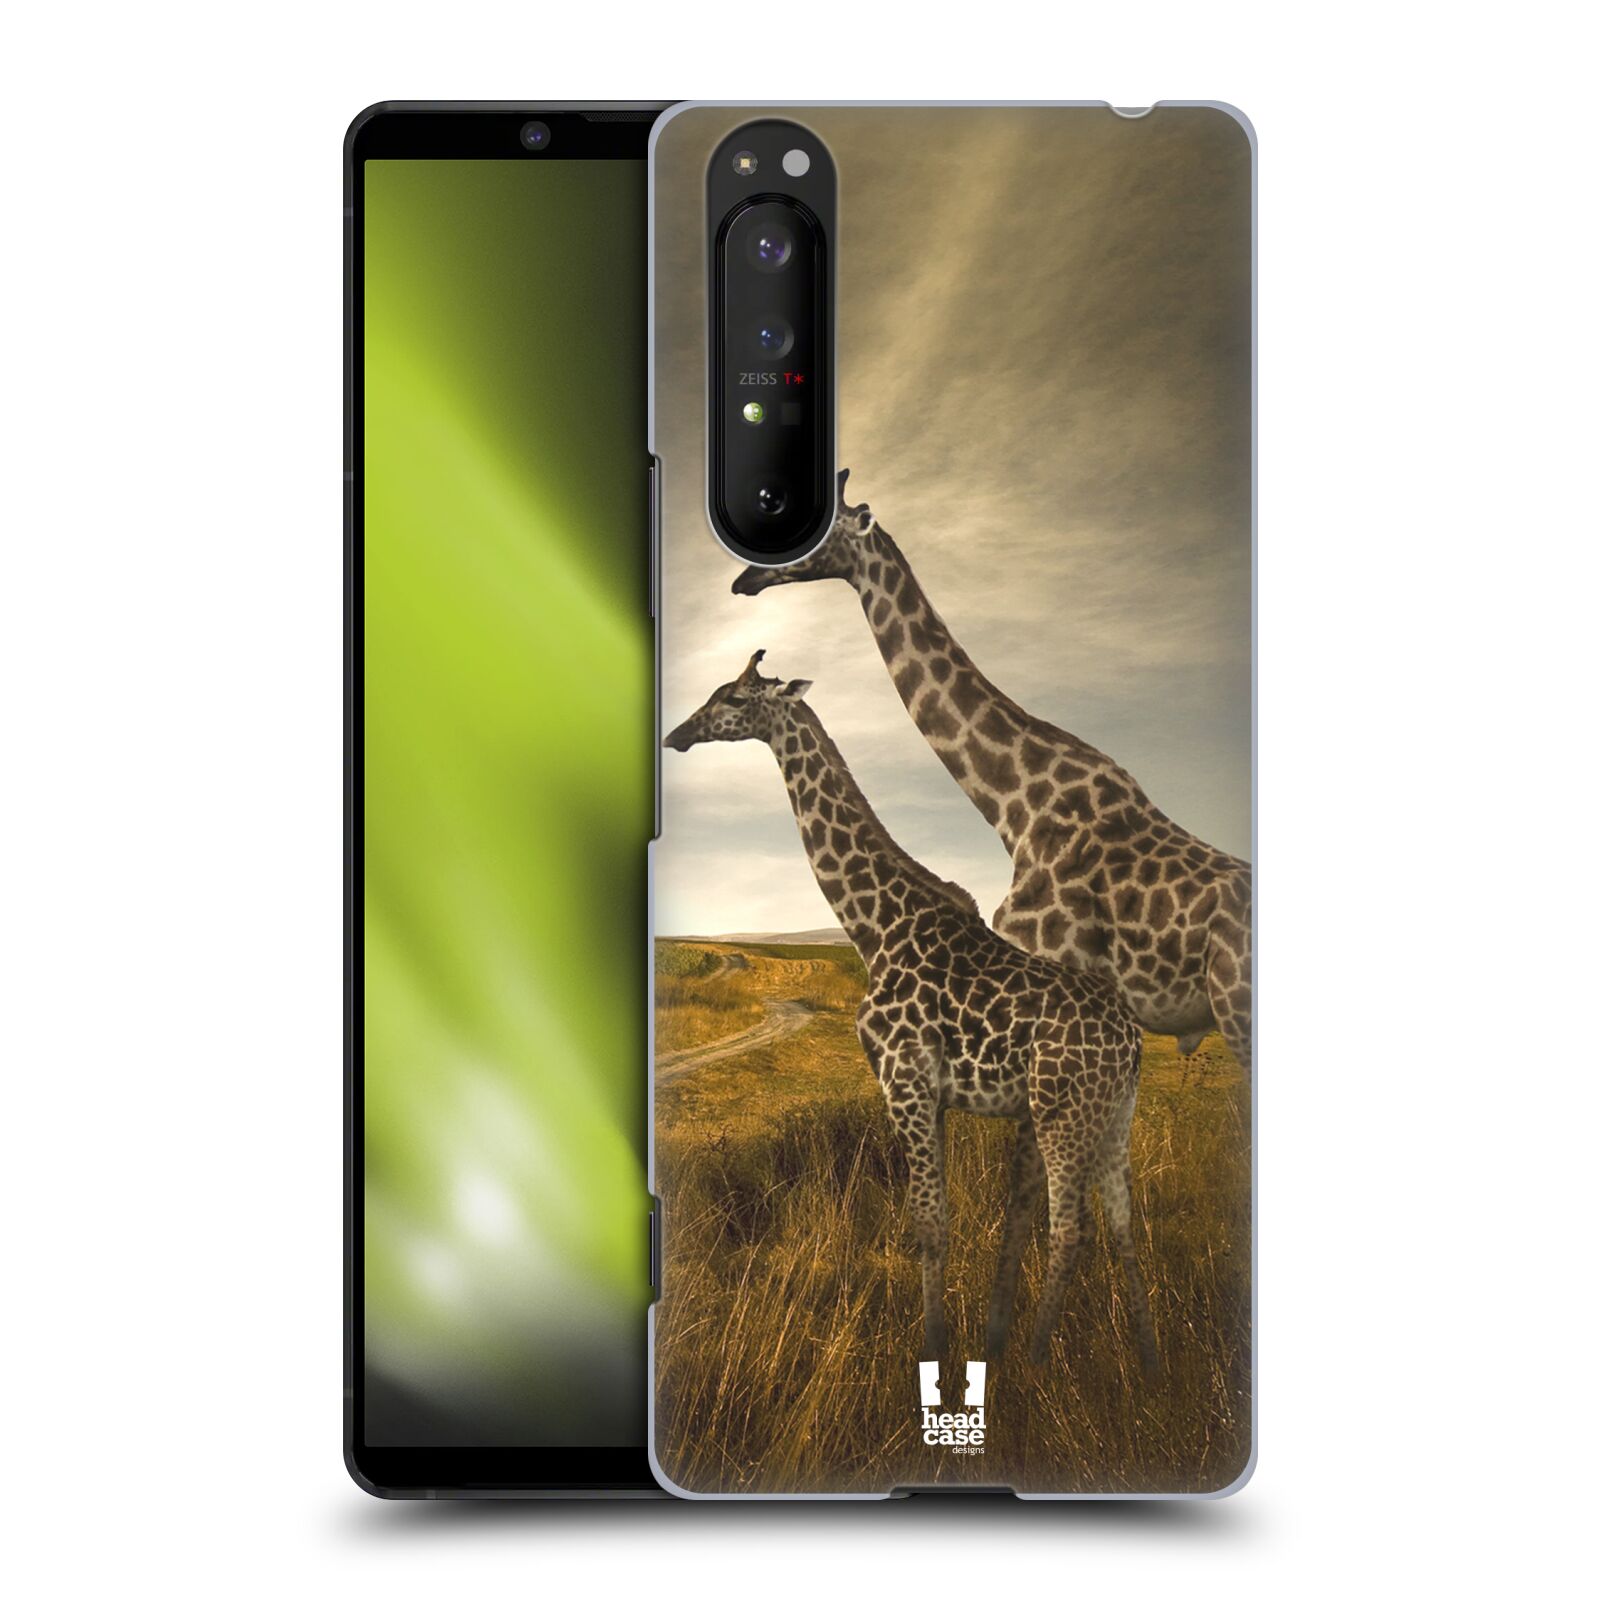 Zadní obal pro mobil Sony Xperia 1 II - HEAD CASE - Svět zvířat žirafy